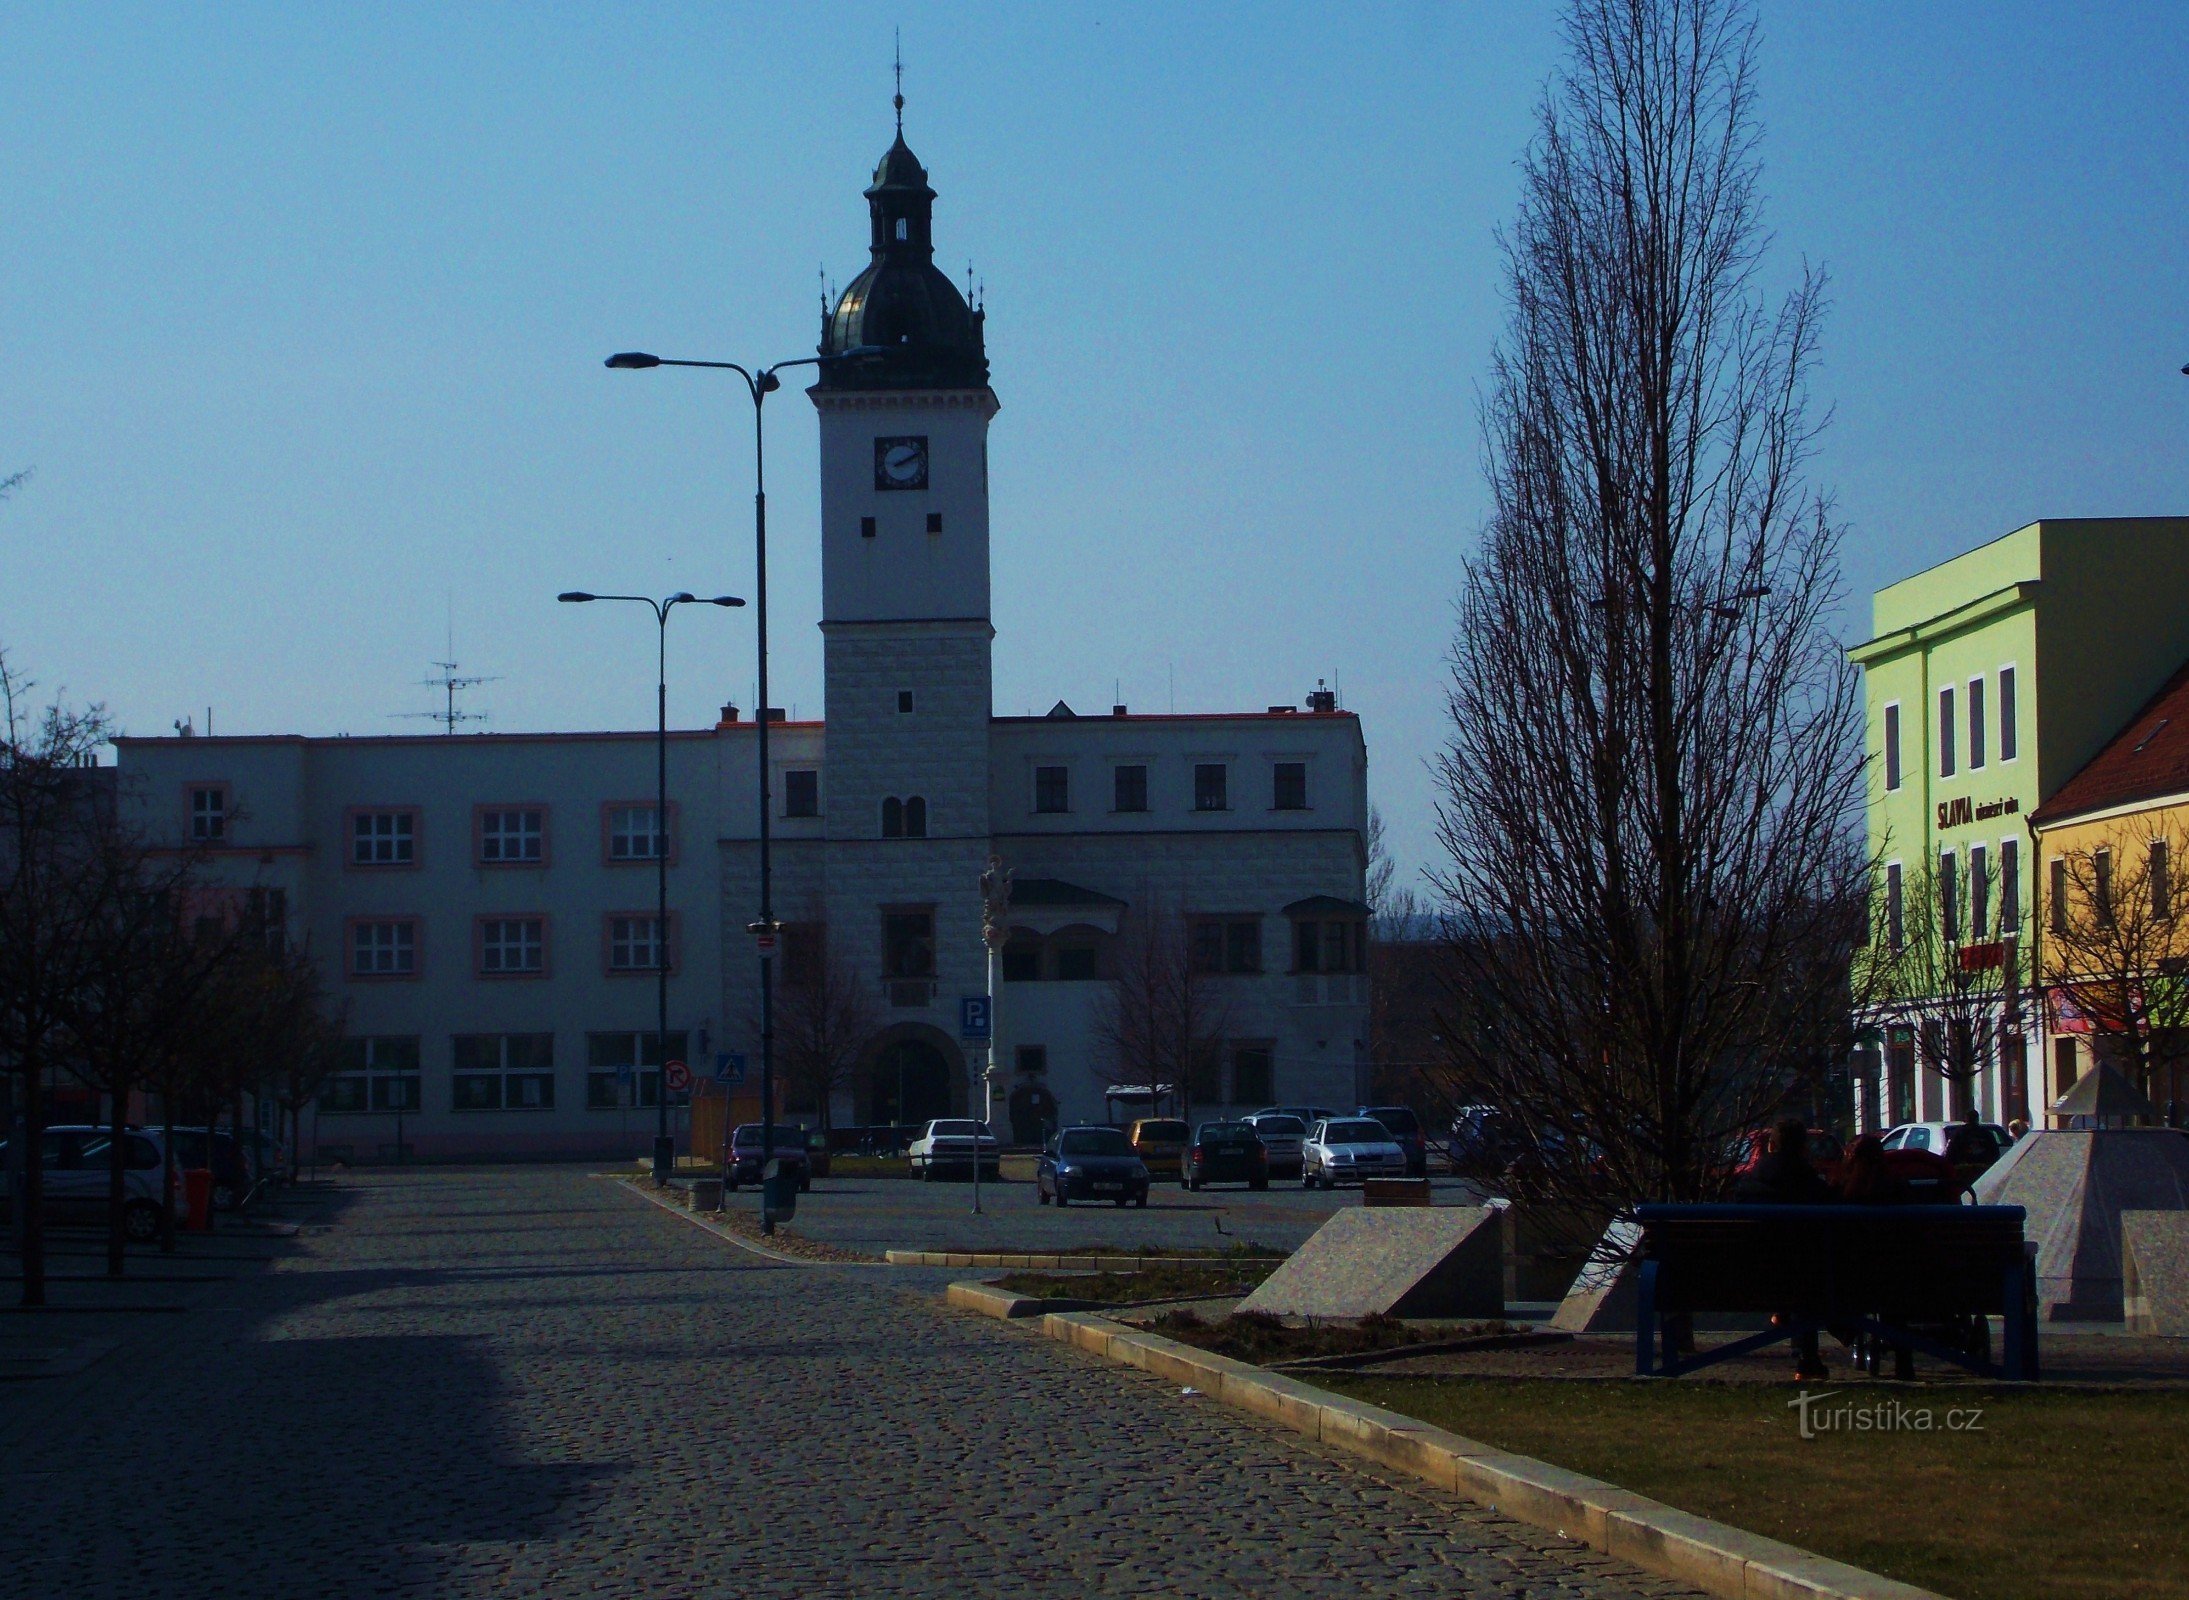 Prefeitura histórica, monumento de Kyjov